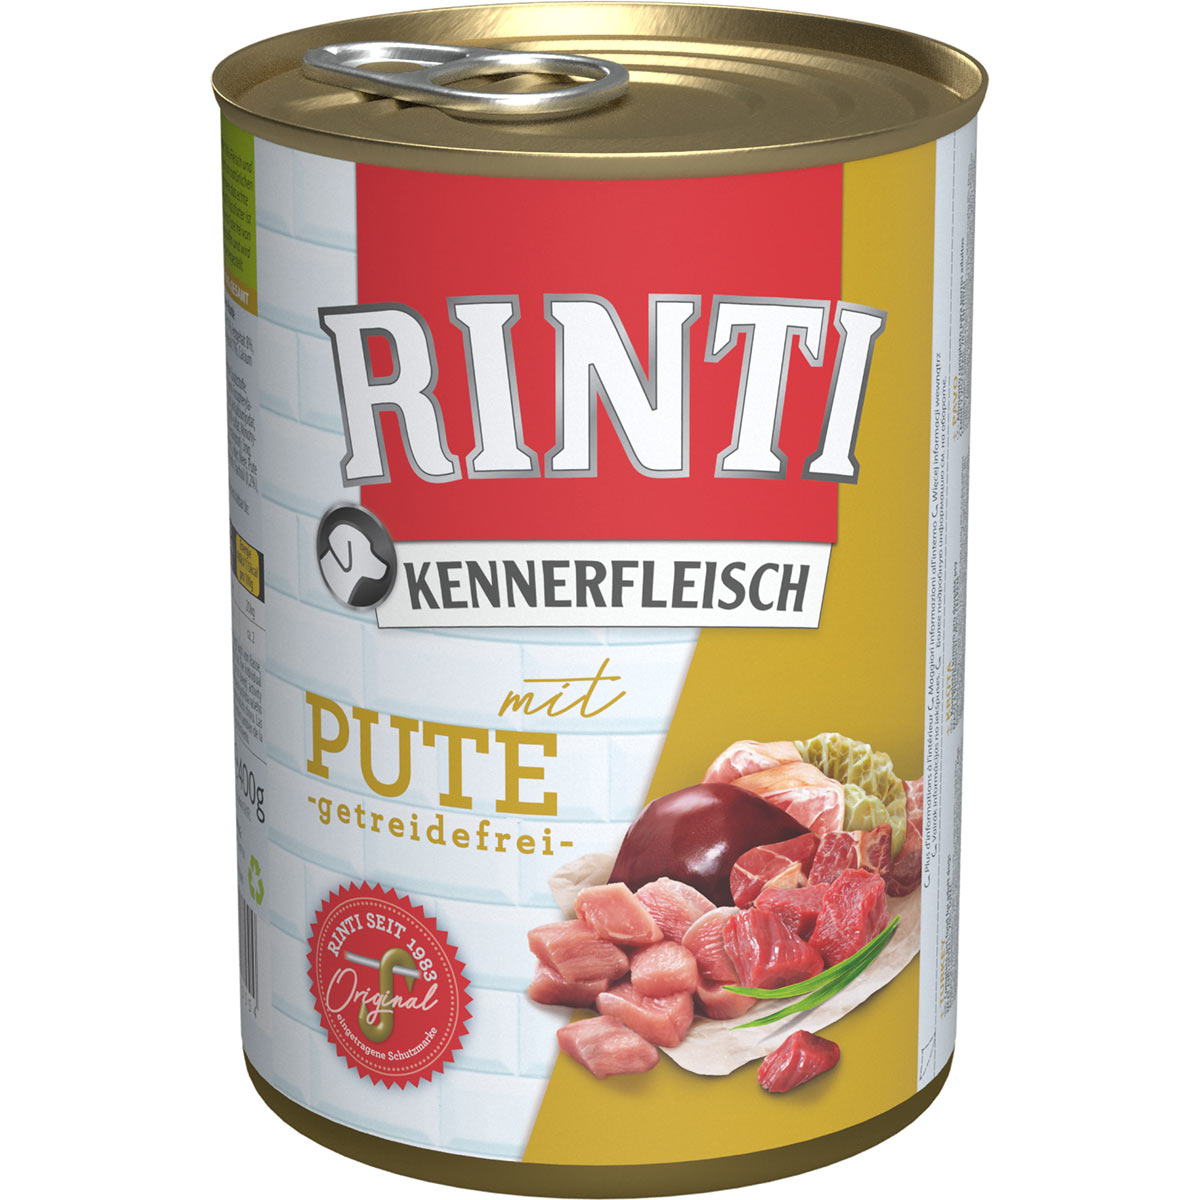 Rinti Kennerfleisch s krůtou, 400 g 24 × 400 g